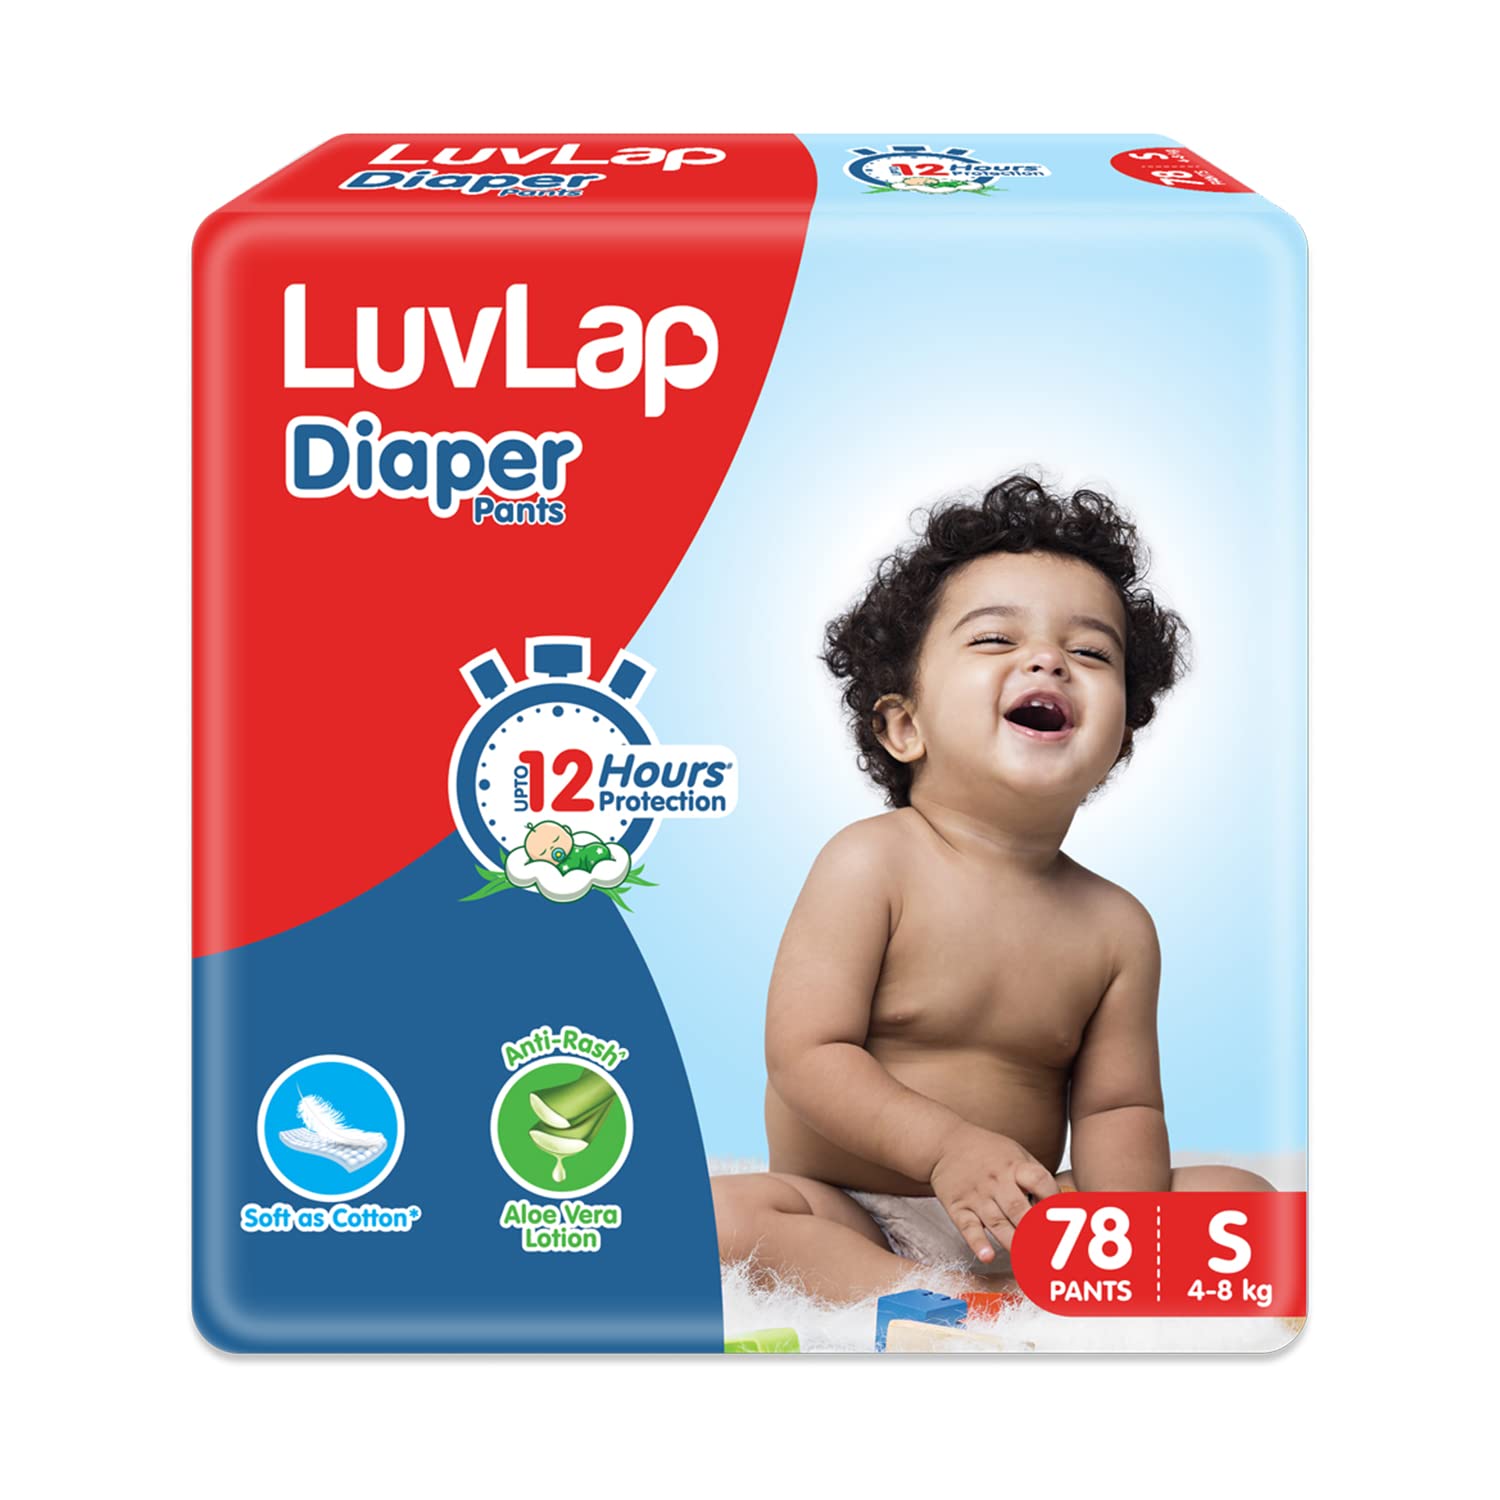 LuvLap Baby Diaper Pants